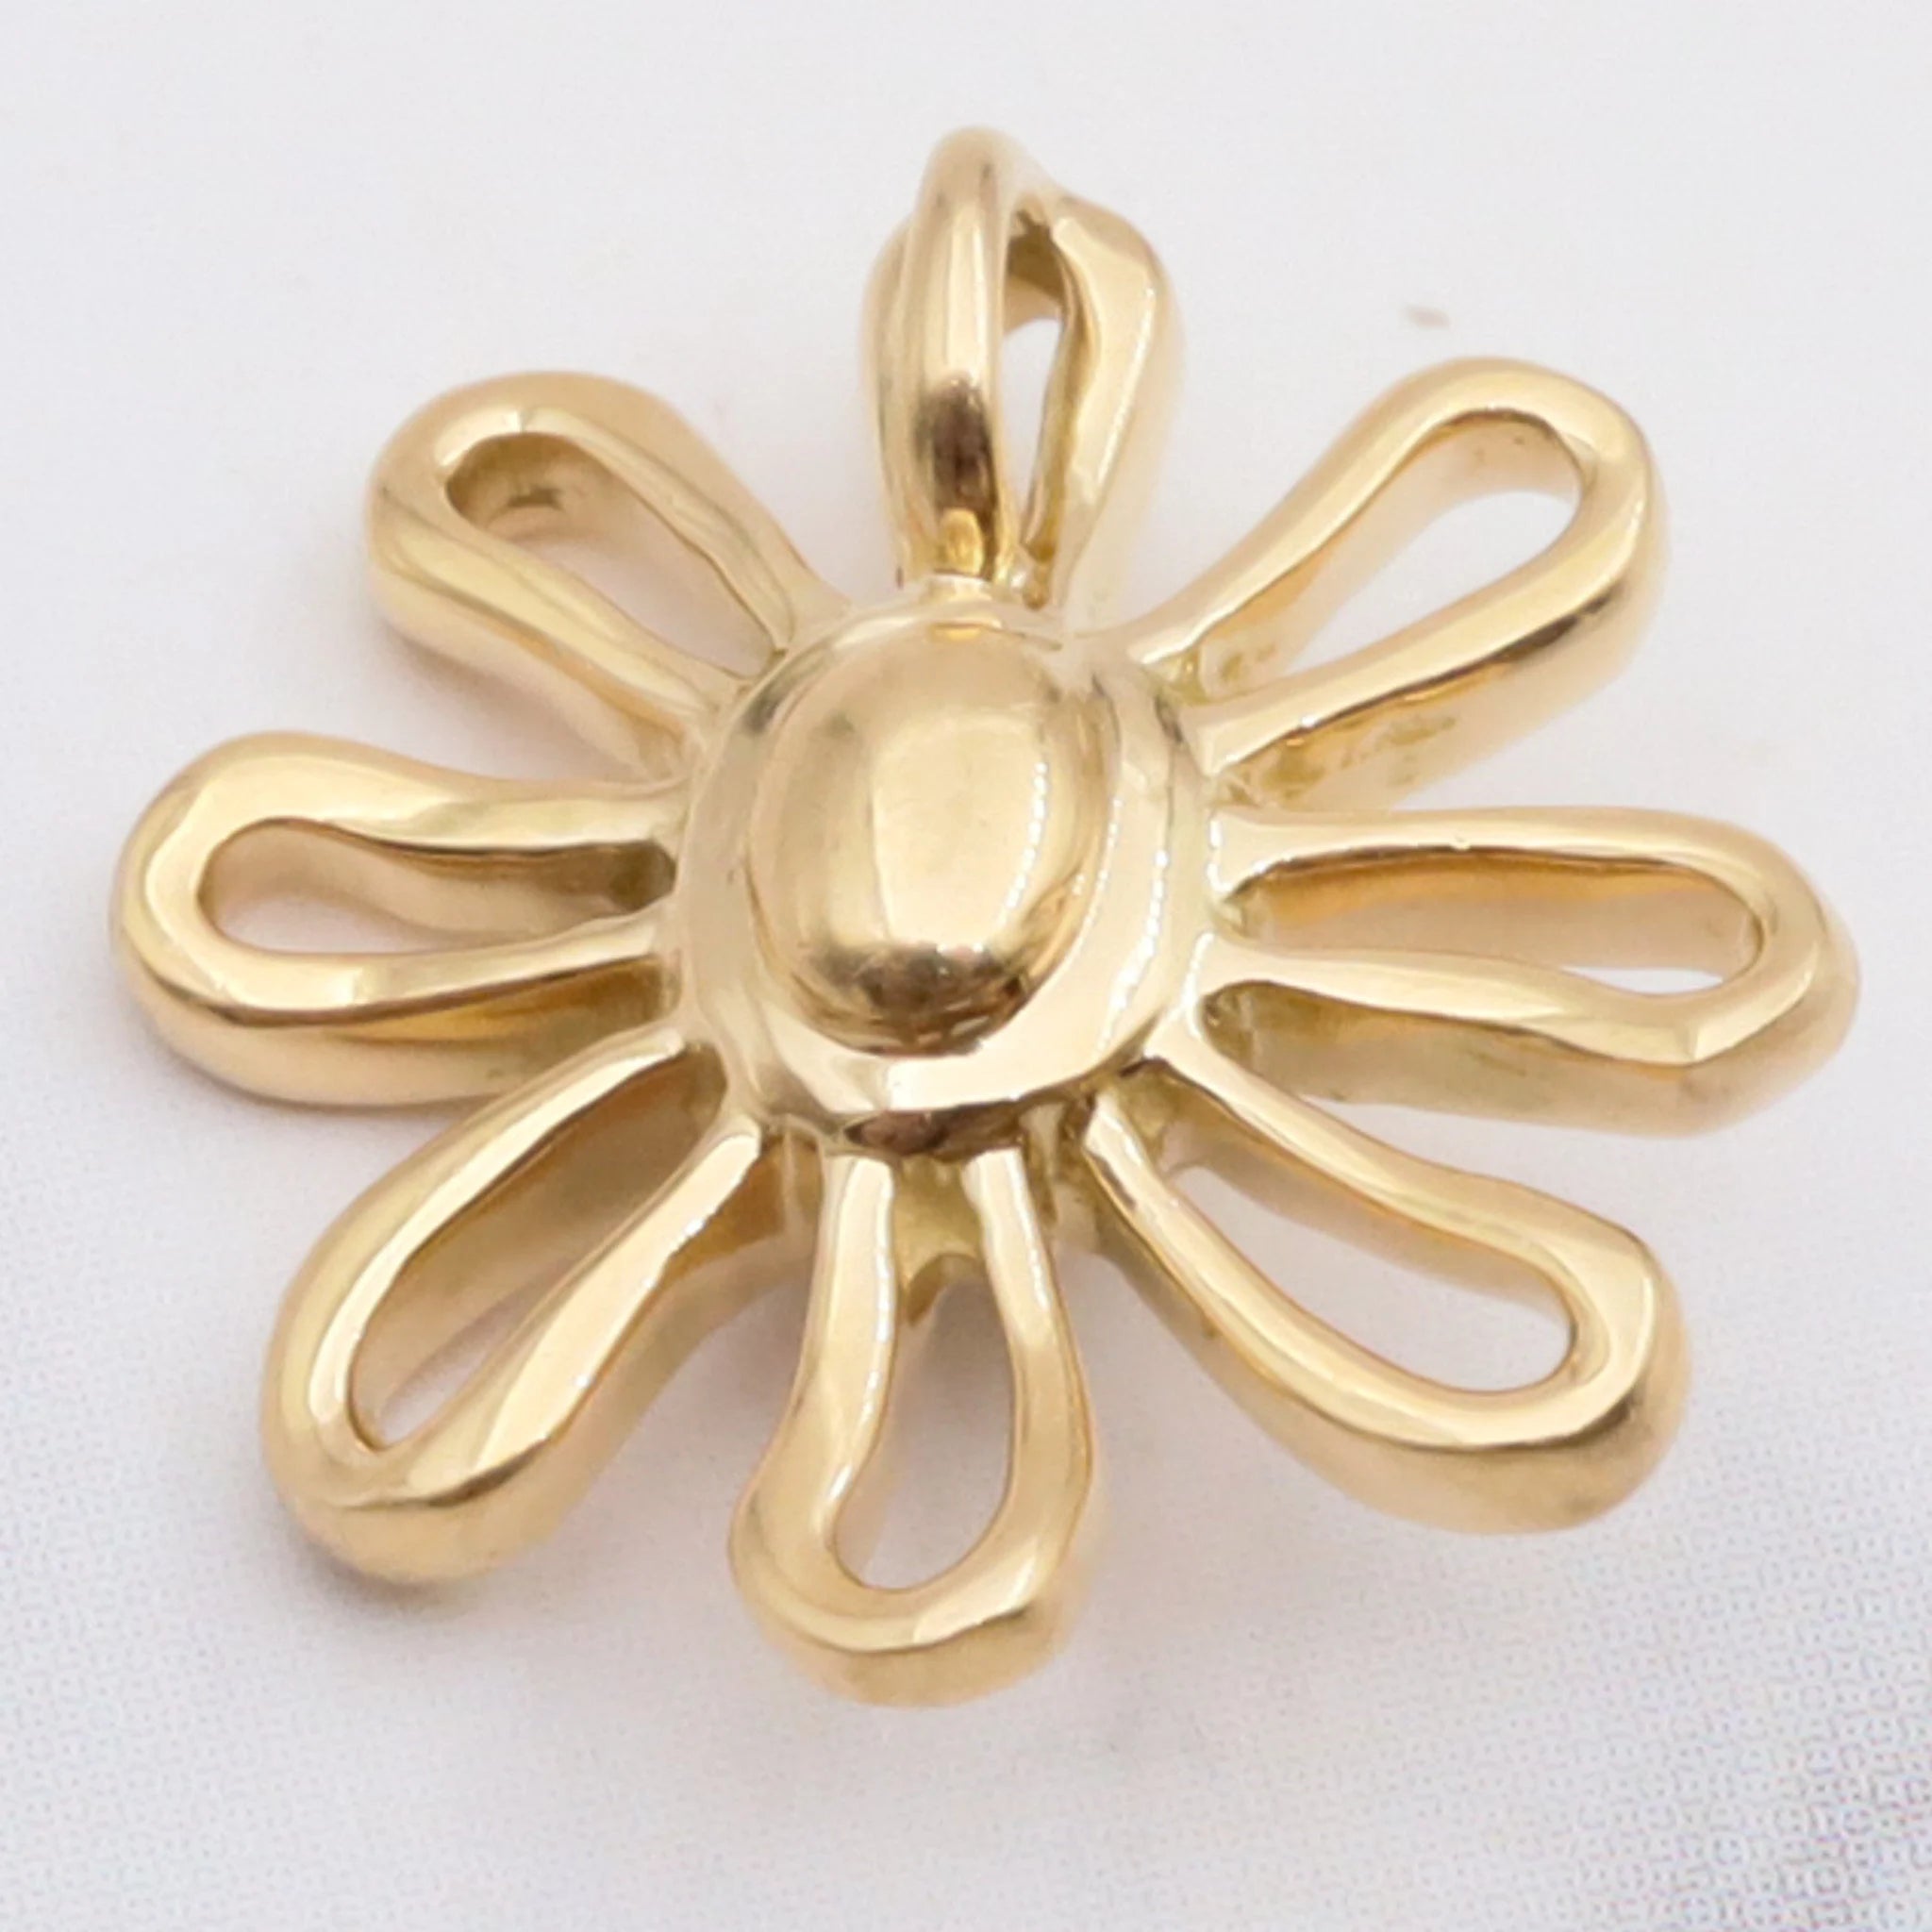 Vintage 18K gold flower pendant